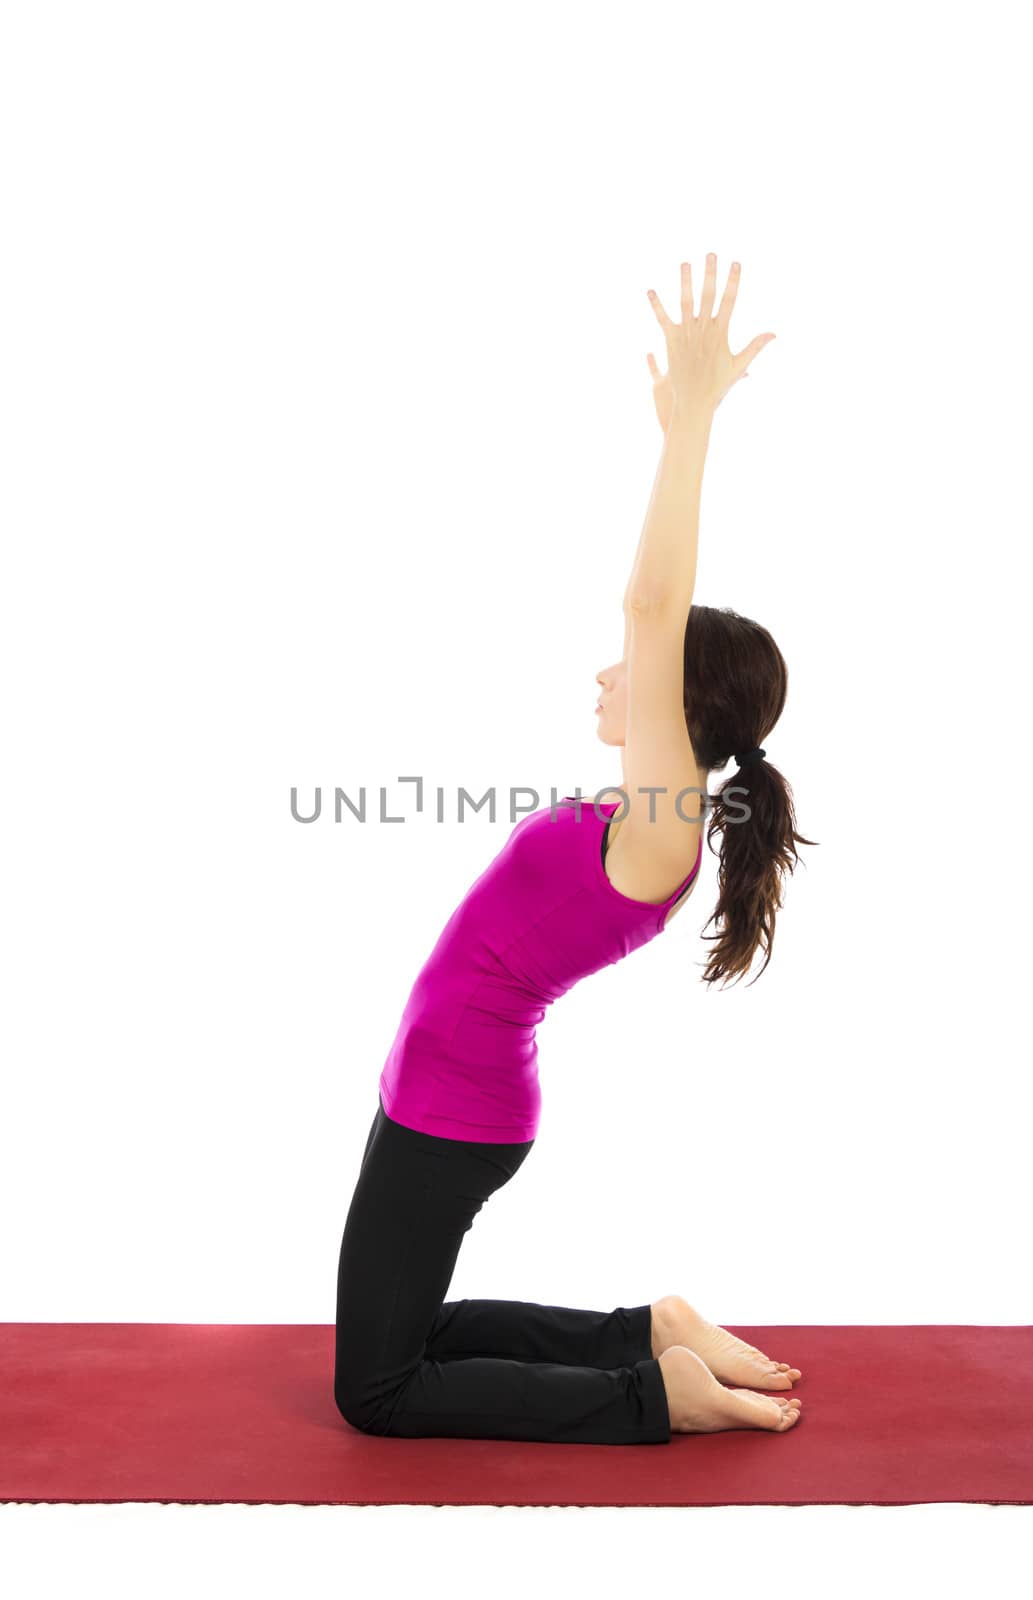 Upper Leg Strengthening in Yoga by snowwhite